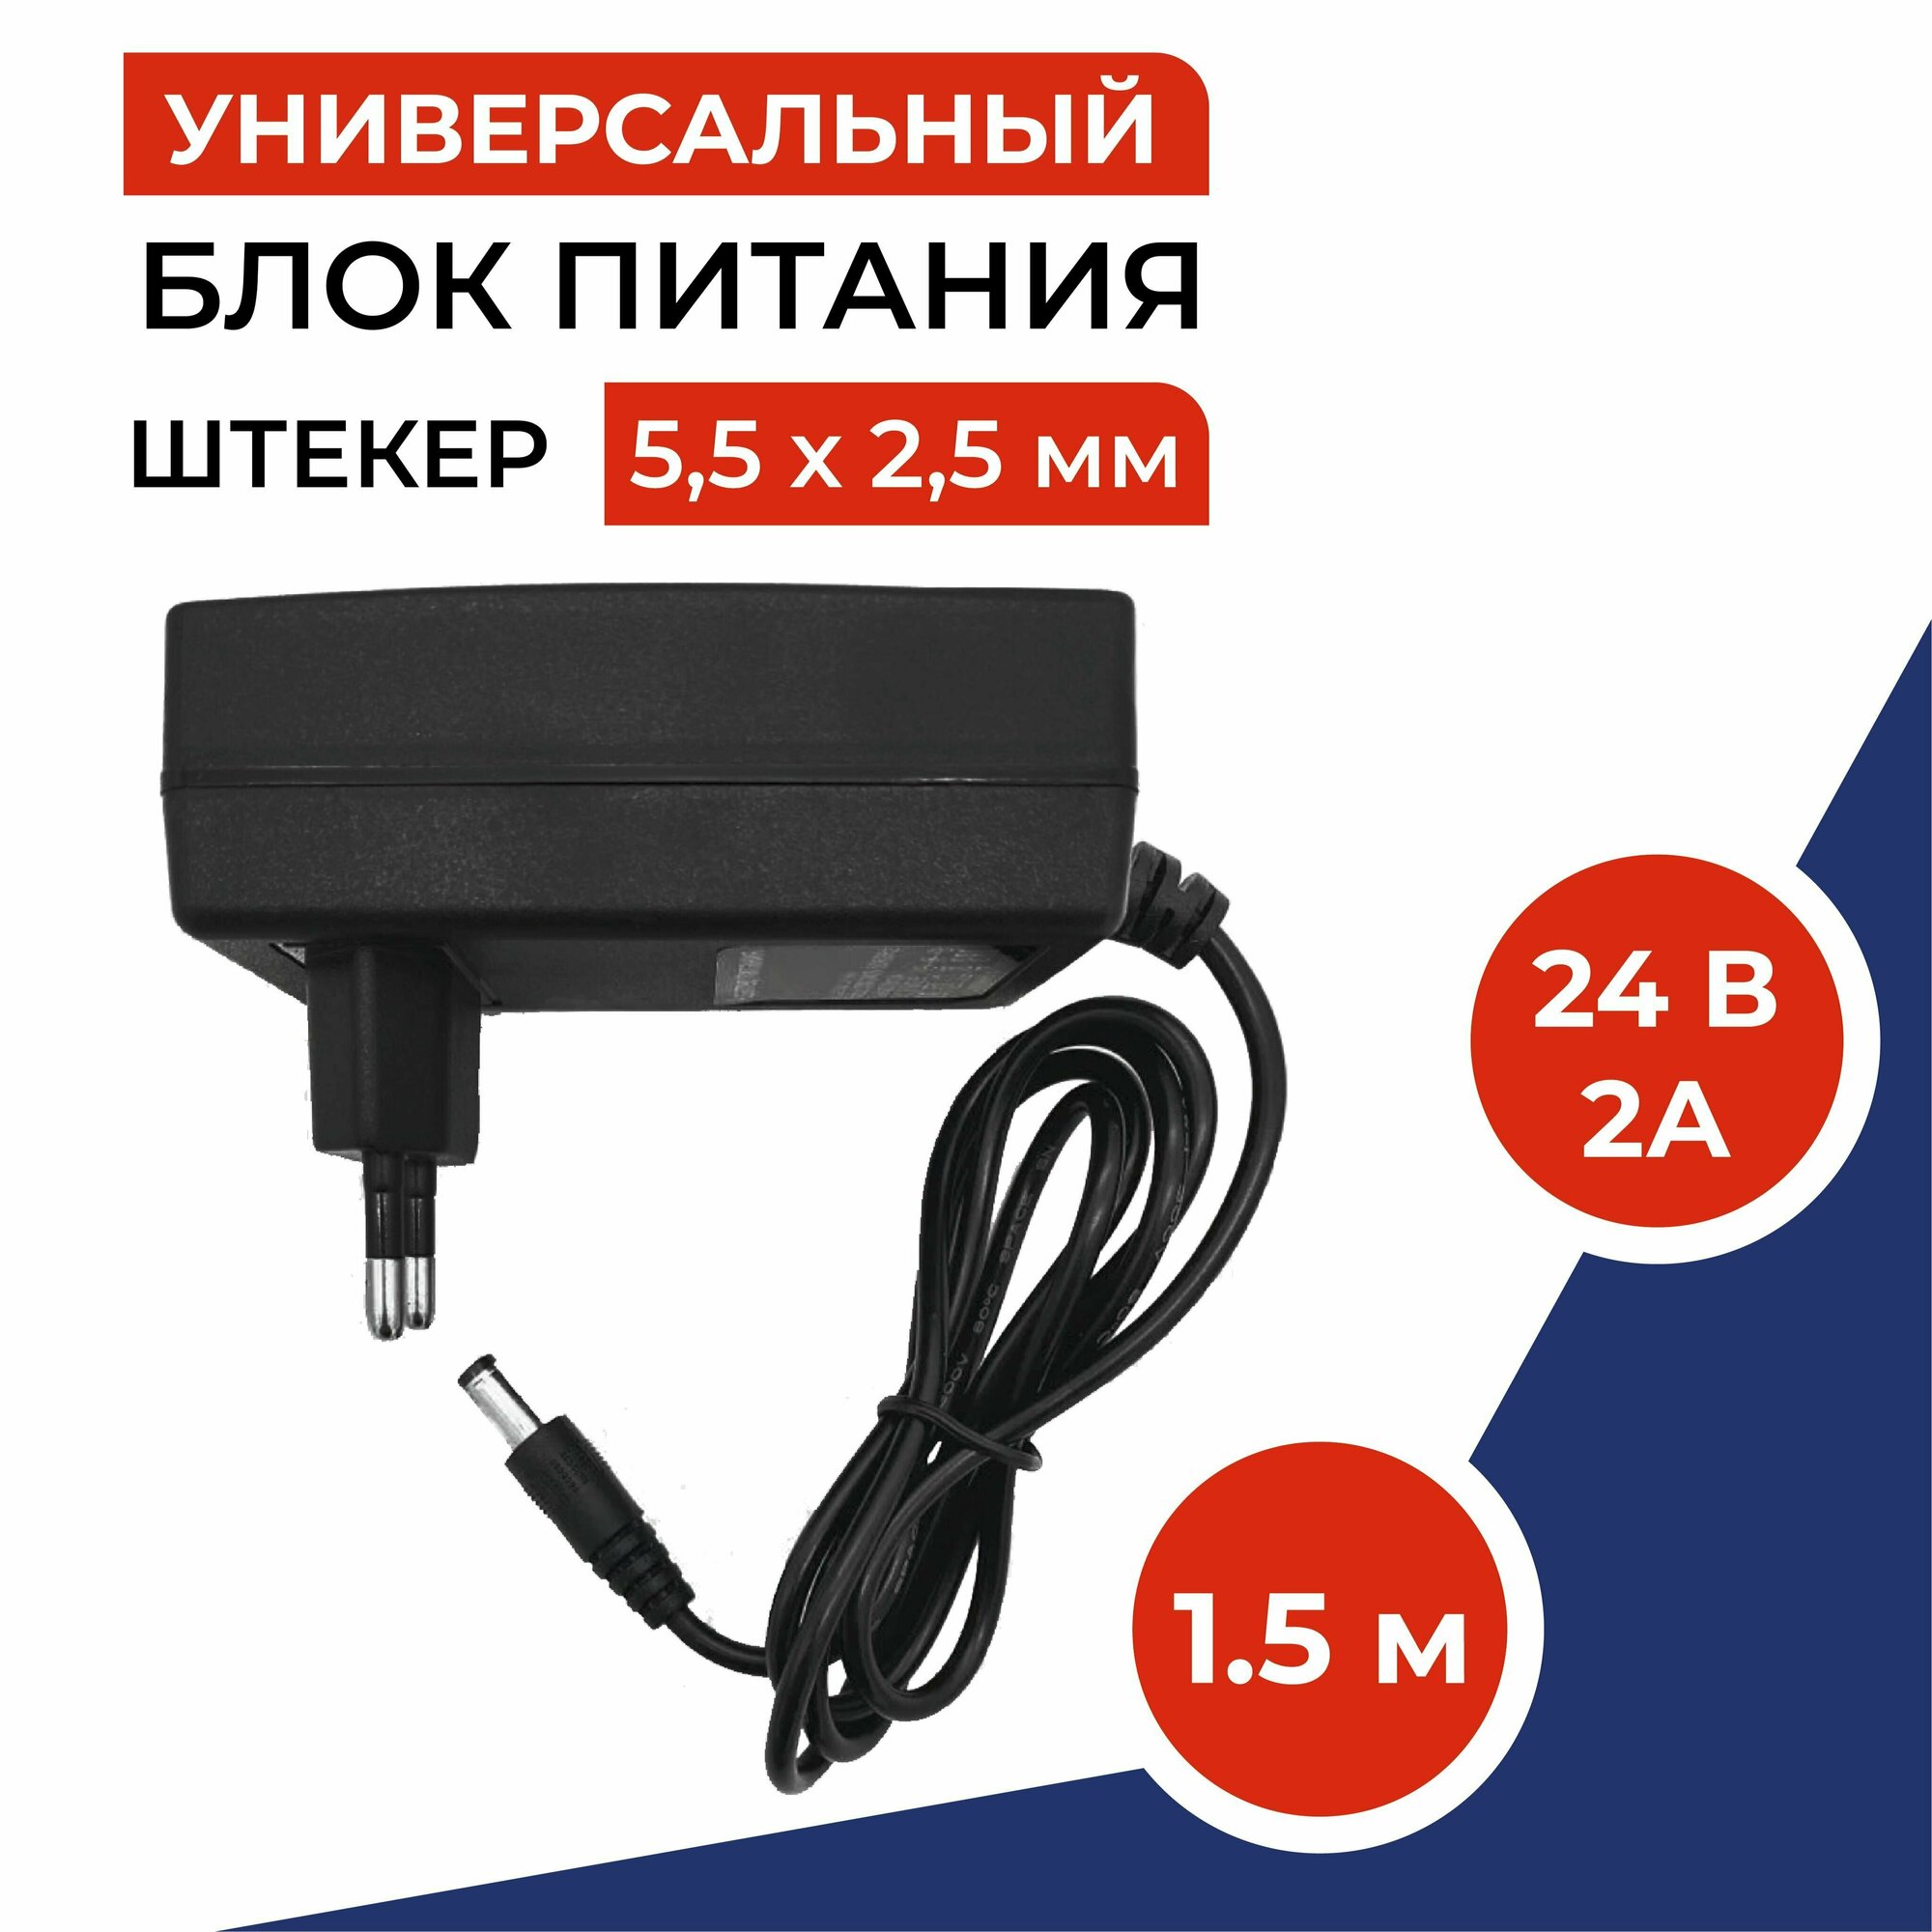 Универсальный блок питания 24V 2A (24В 2А) (штекер 5,5 x 2,5мм) для TV приставок, камер видеонаблюдения, светодиодных лент